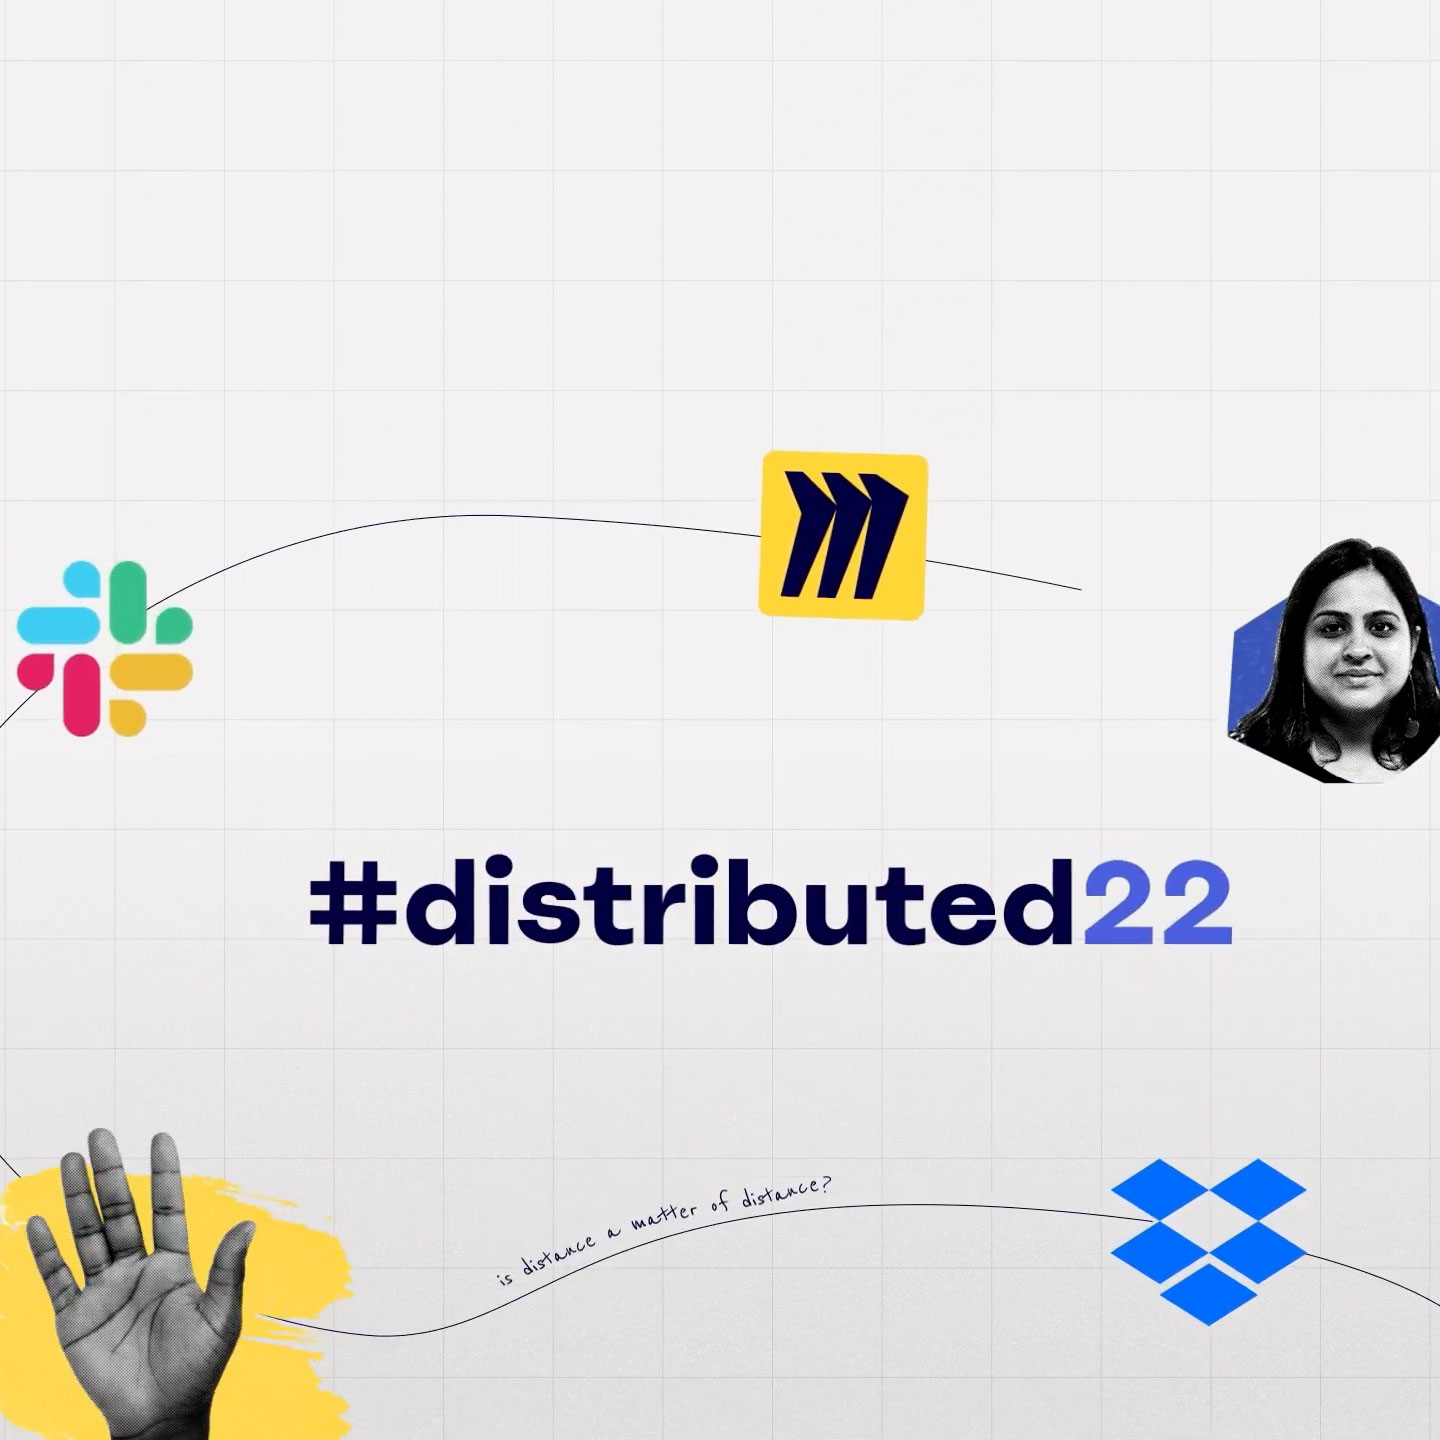 Karta tytułowa wydarzenia #distributed22 z logo firm Miro, Slack i Dropbox